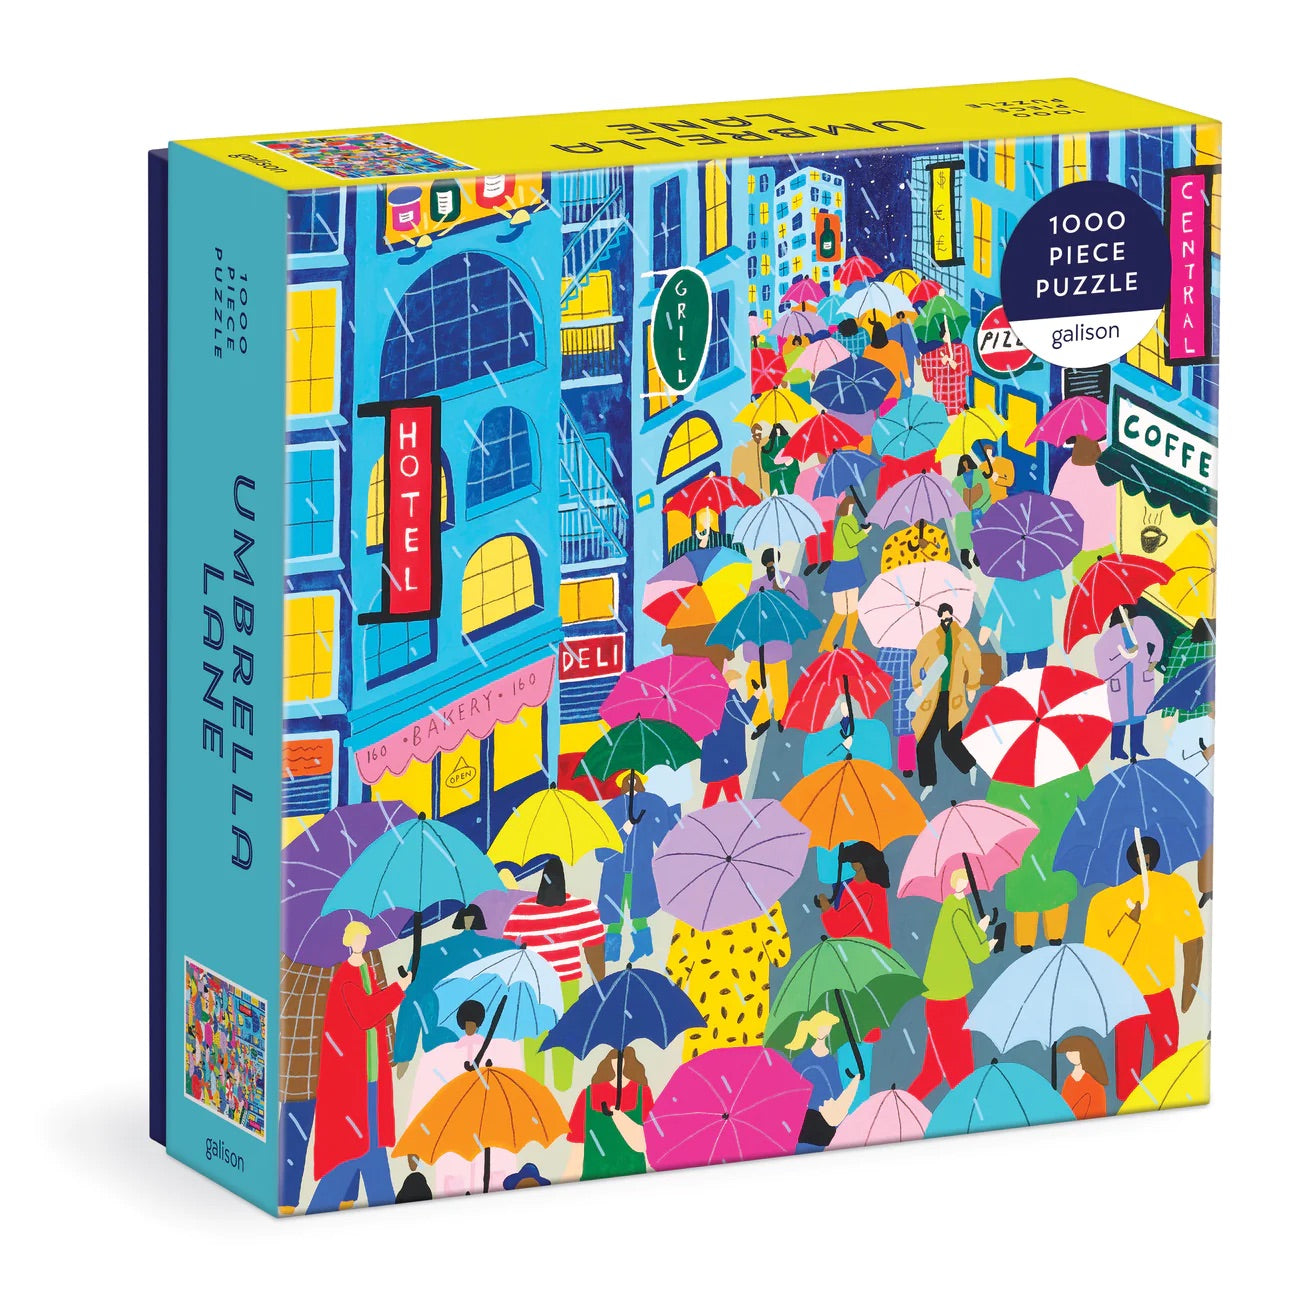 1000 Piece Puzzle - Umbrella Lane